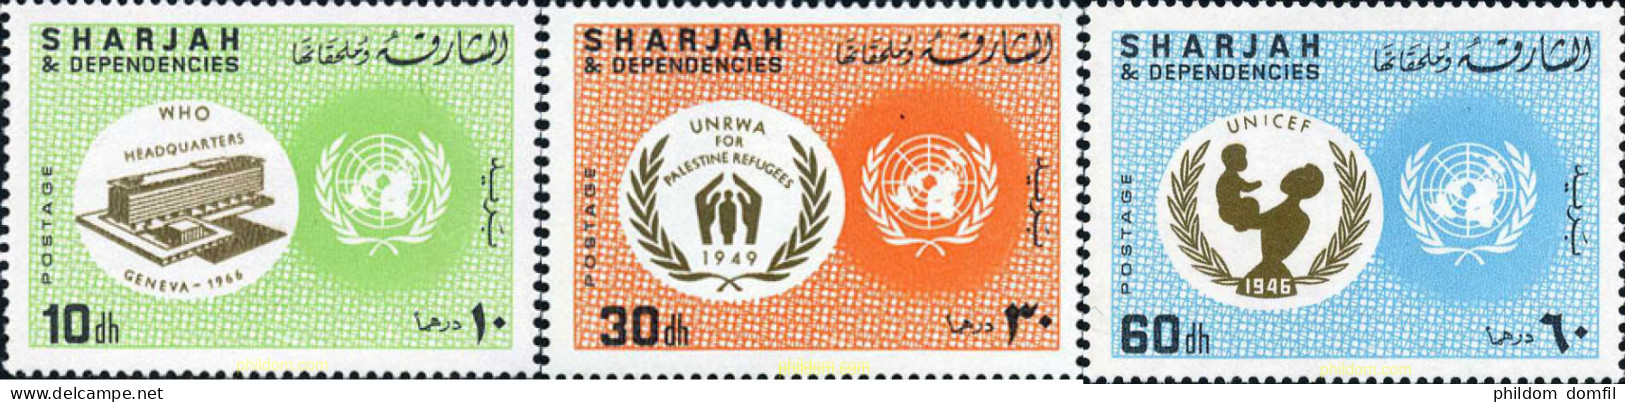 179863 MNH SHARJAH 1967 22 ANIVERSARIO DE LAS NACIONES UNIDAS - Sharjah